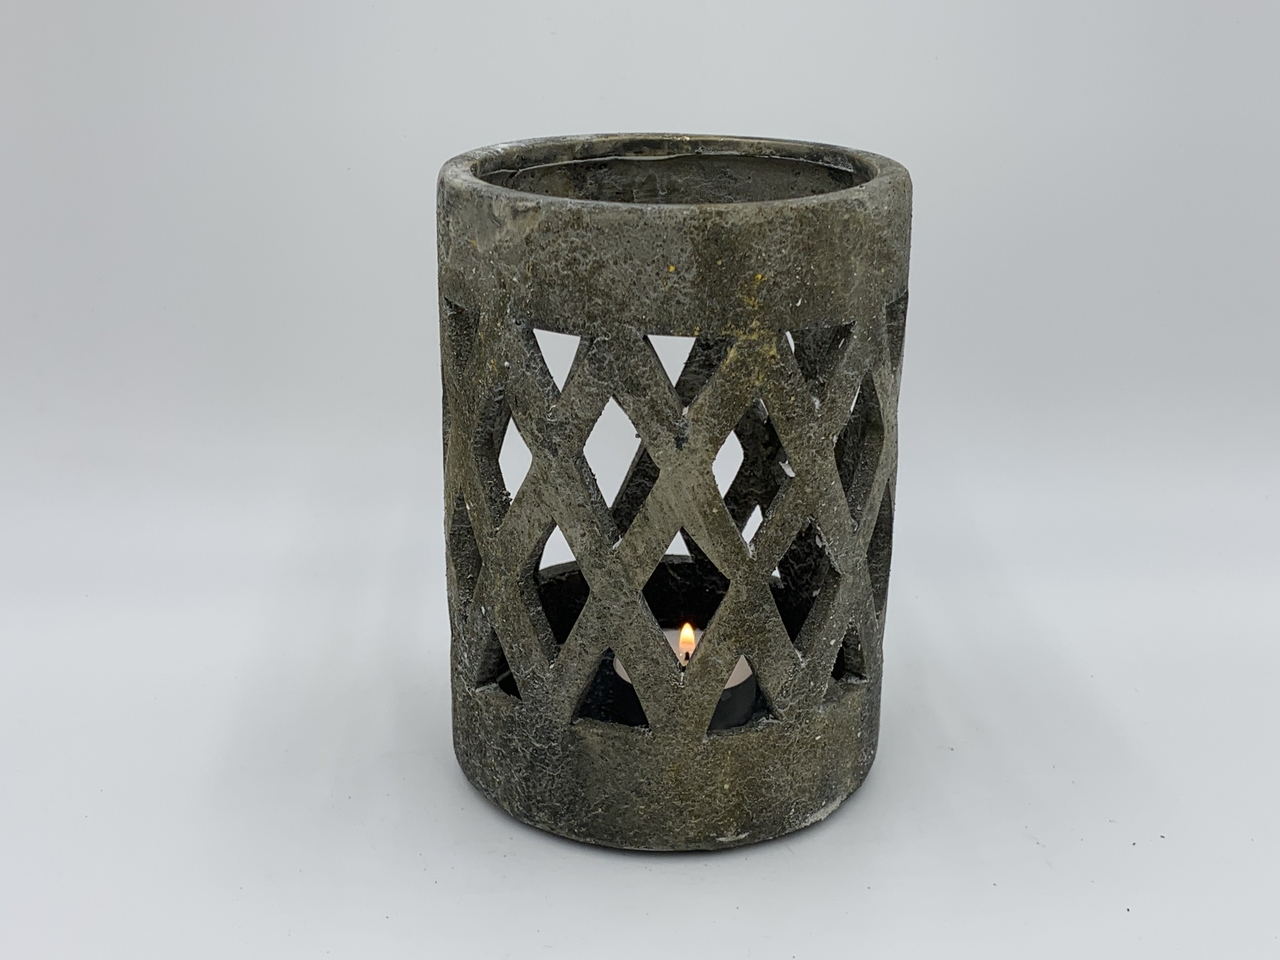  Waxinelichthouder / windlicht stonegrey grijs steen wiebertjes maat M 16x11 cm| 65538 | Home Sweet Home | Stoer & Sober Wo